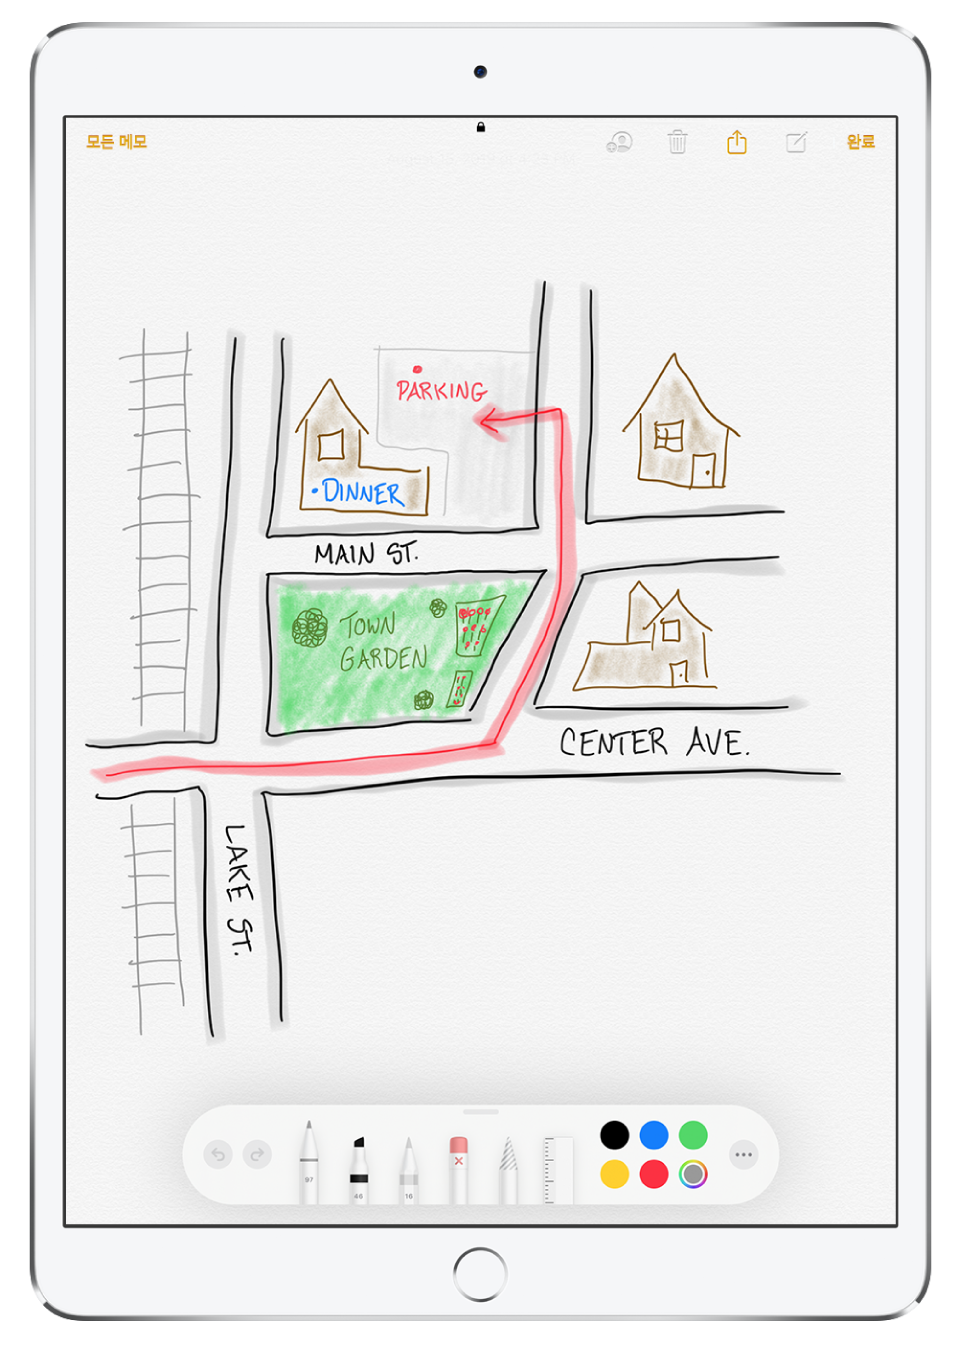 메모 앱에 있는 메모 안의 주변 풍경 그림. 그림에는 레이블로 표시된 거리와 이용 가능한 주차장을 가리키는 빨간색 화살표가 포함됨. 화면 하단을 따라 쓰기 도구와 사용자 설정 색상이 선택된 마크업 도구 막대가 나열됨.